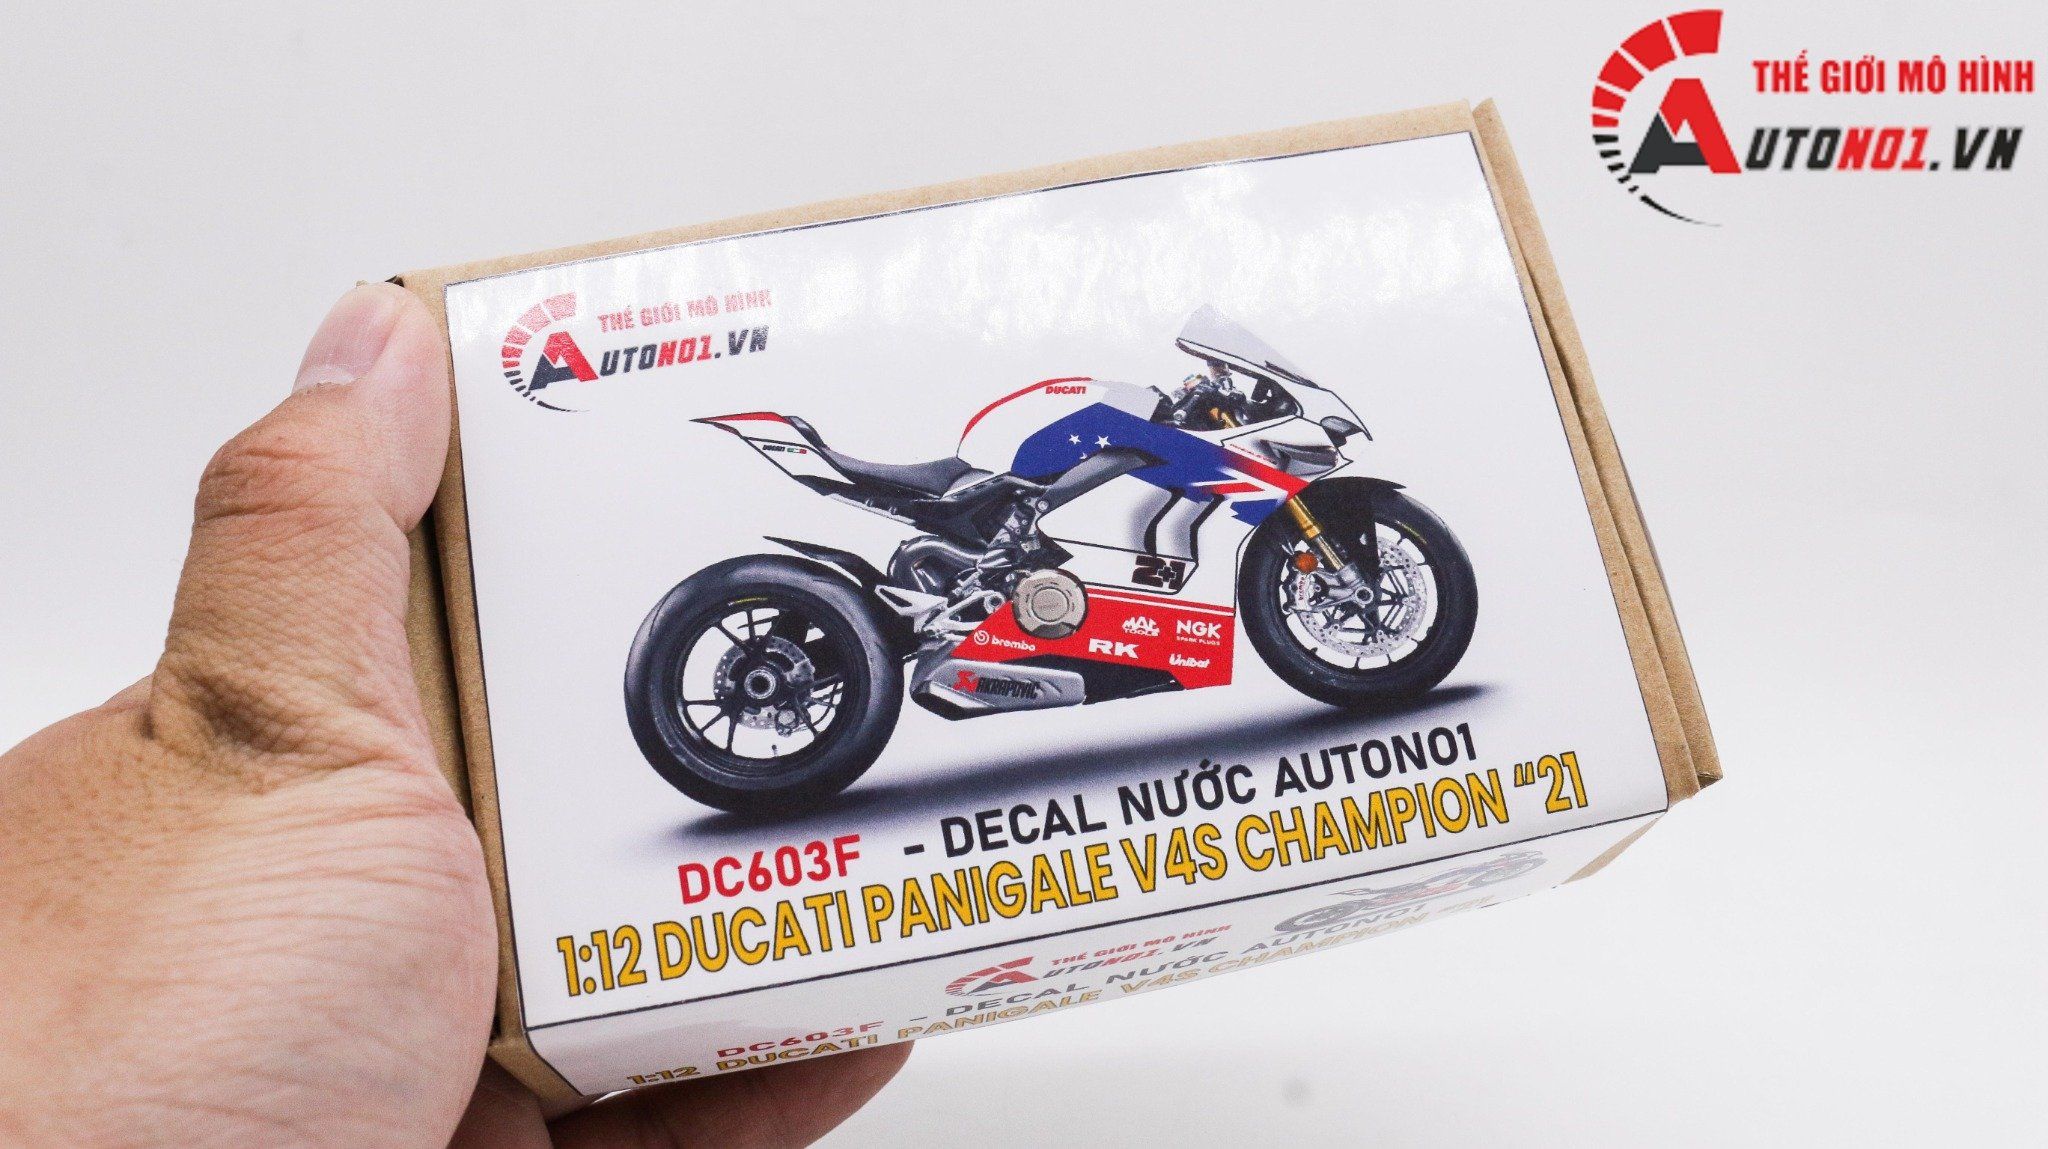  Decal nước độ Ducati Panigale V4S Champion 21 tỉ lệ 1:12 Autono1 DC603f 